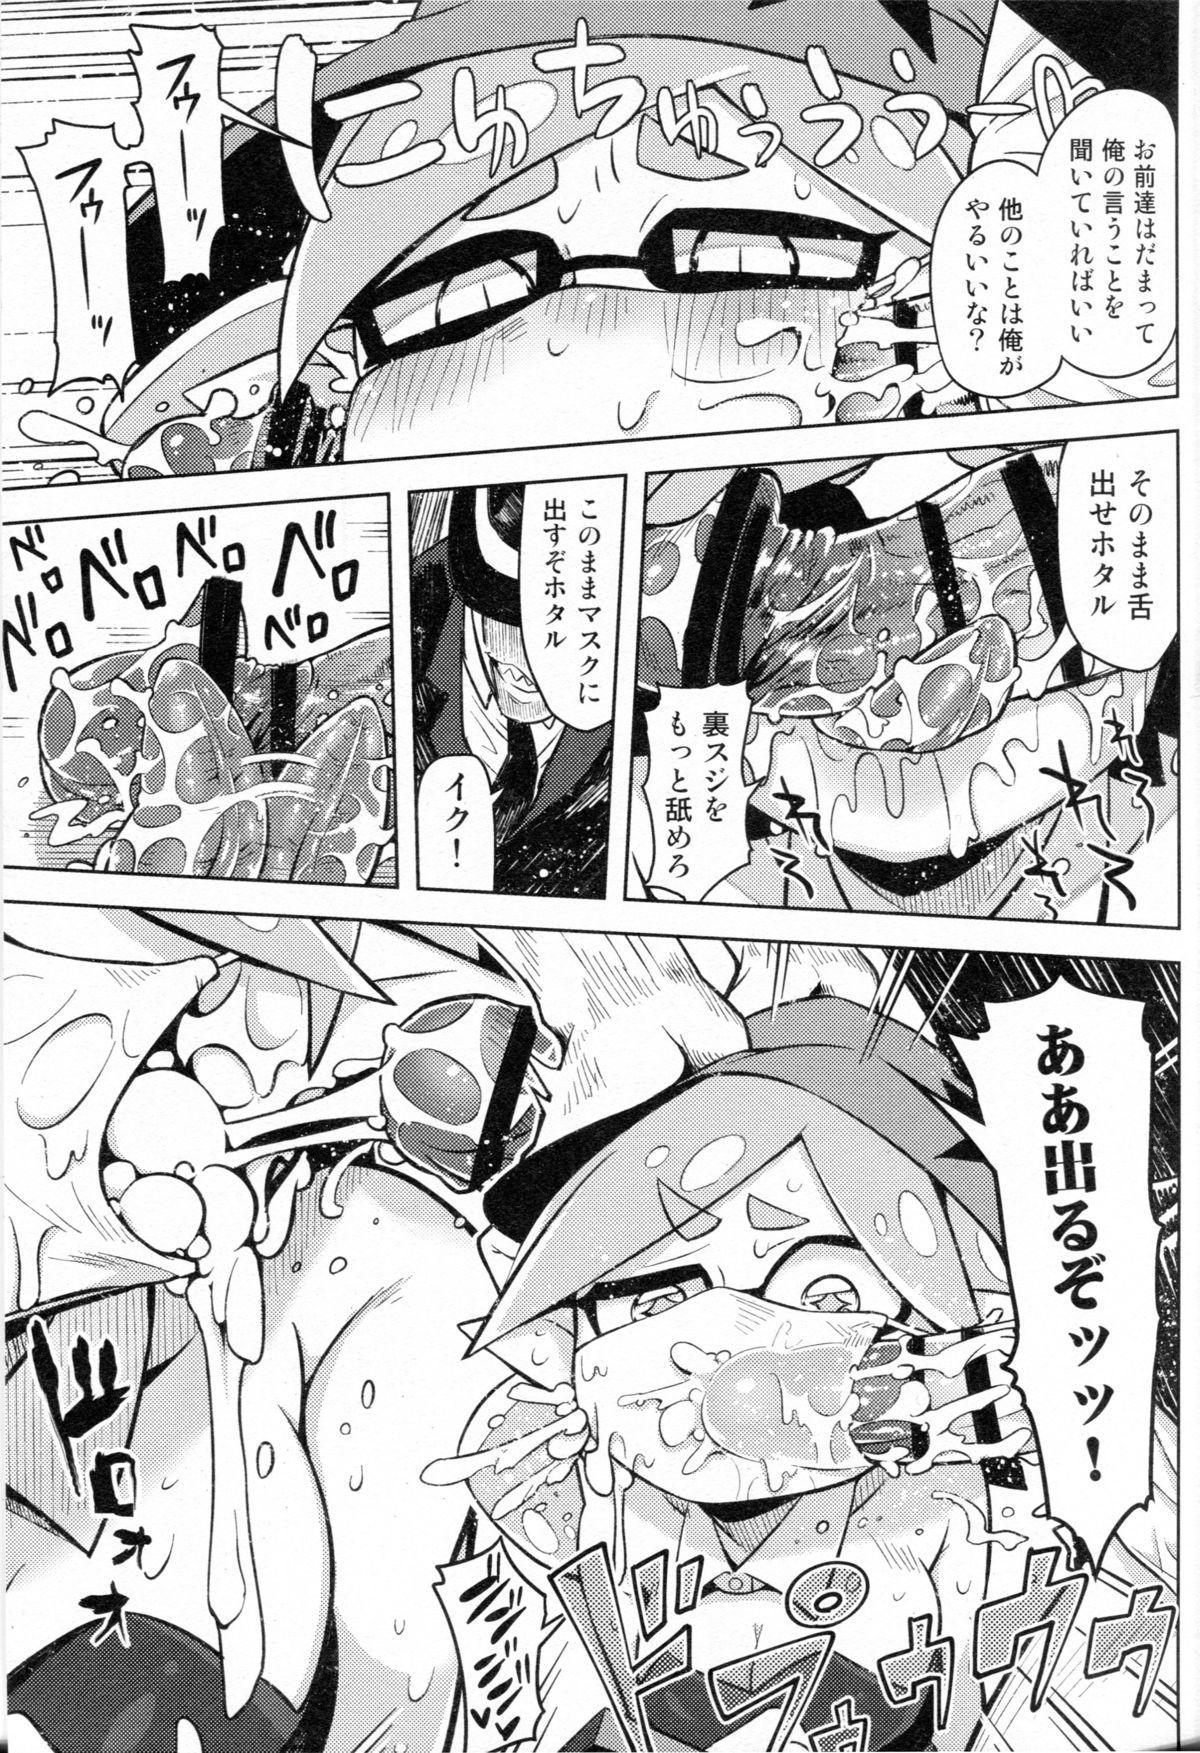 Sucks Hero Kikiippatsu - Splatoon Mofos - Page 5